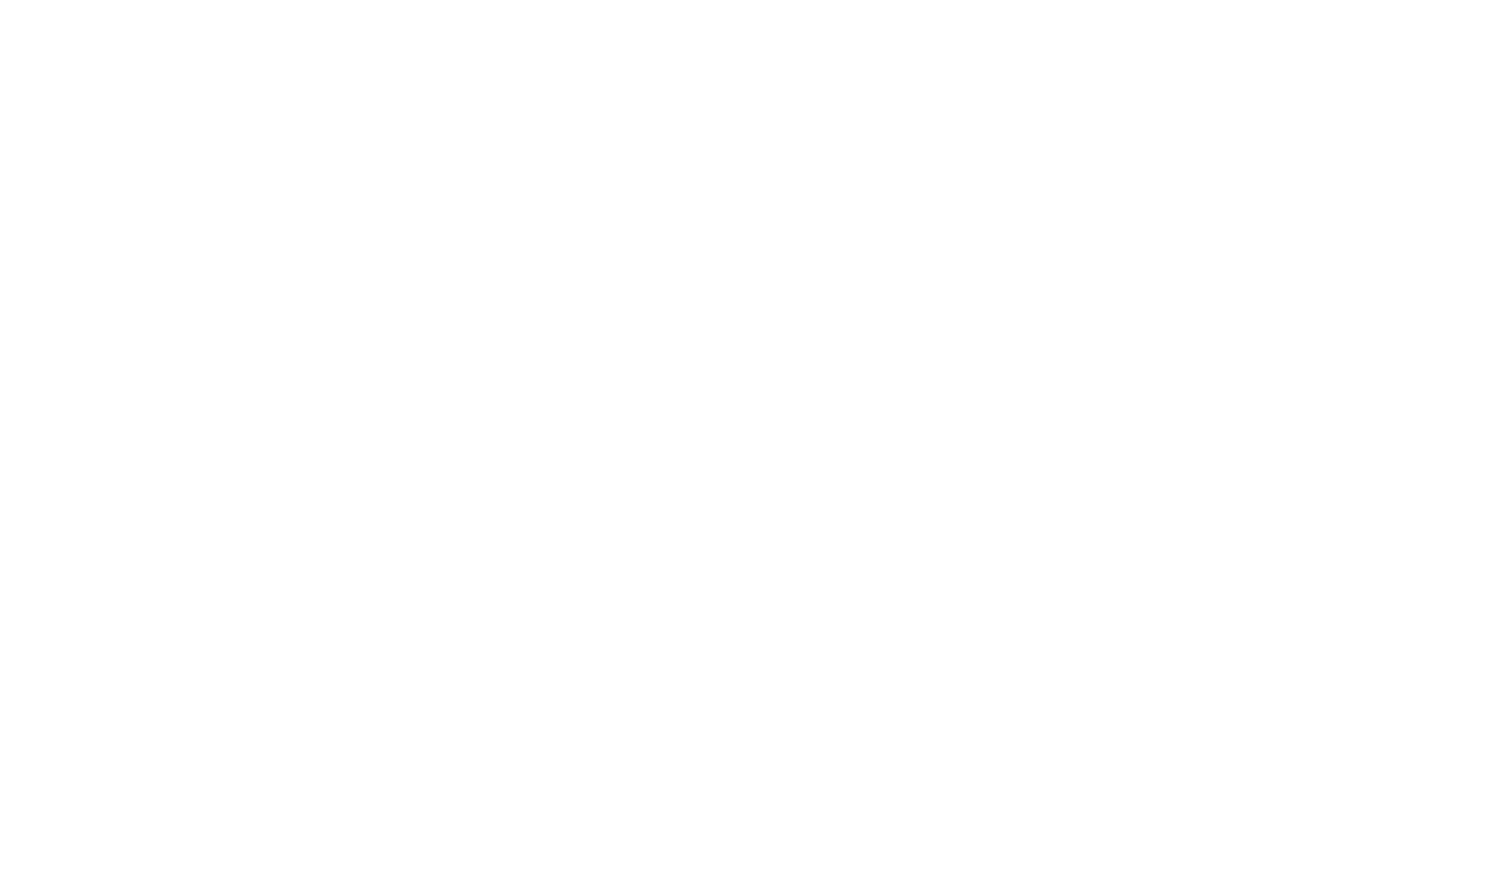 pefc-label-pefc10-31-3658-la-caisserie-du-bazadais